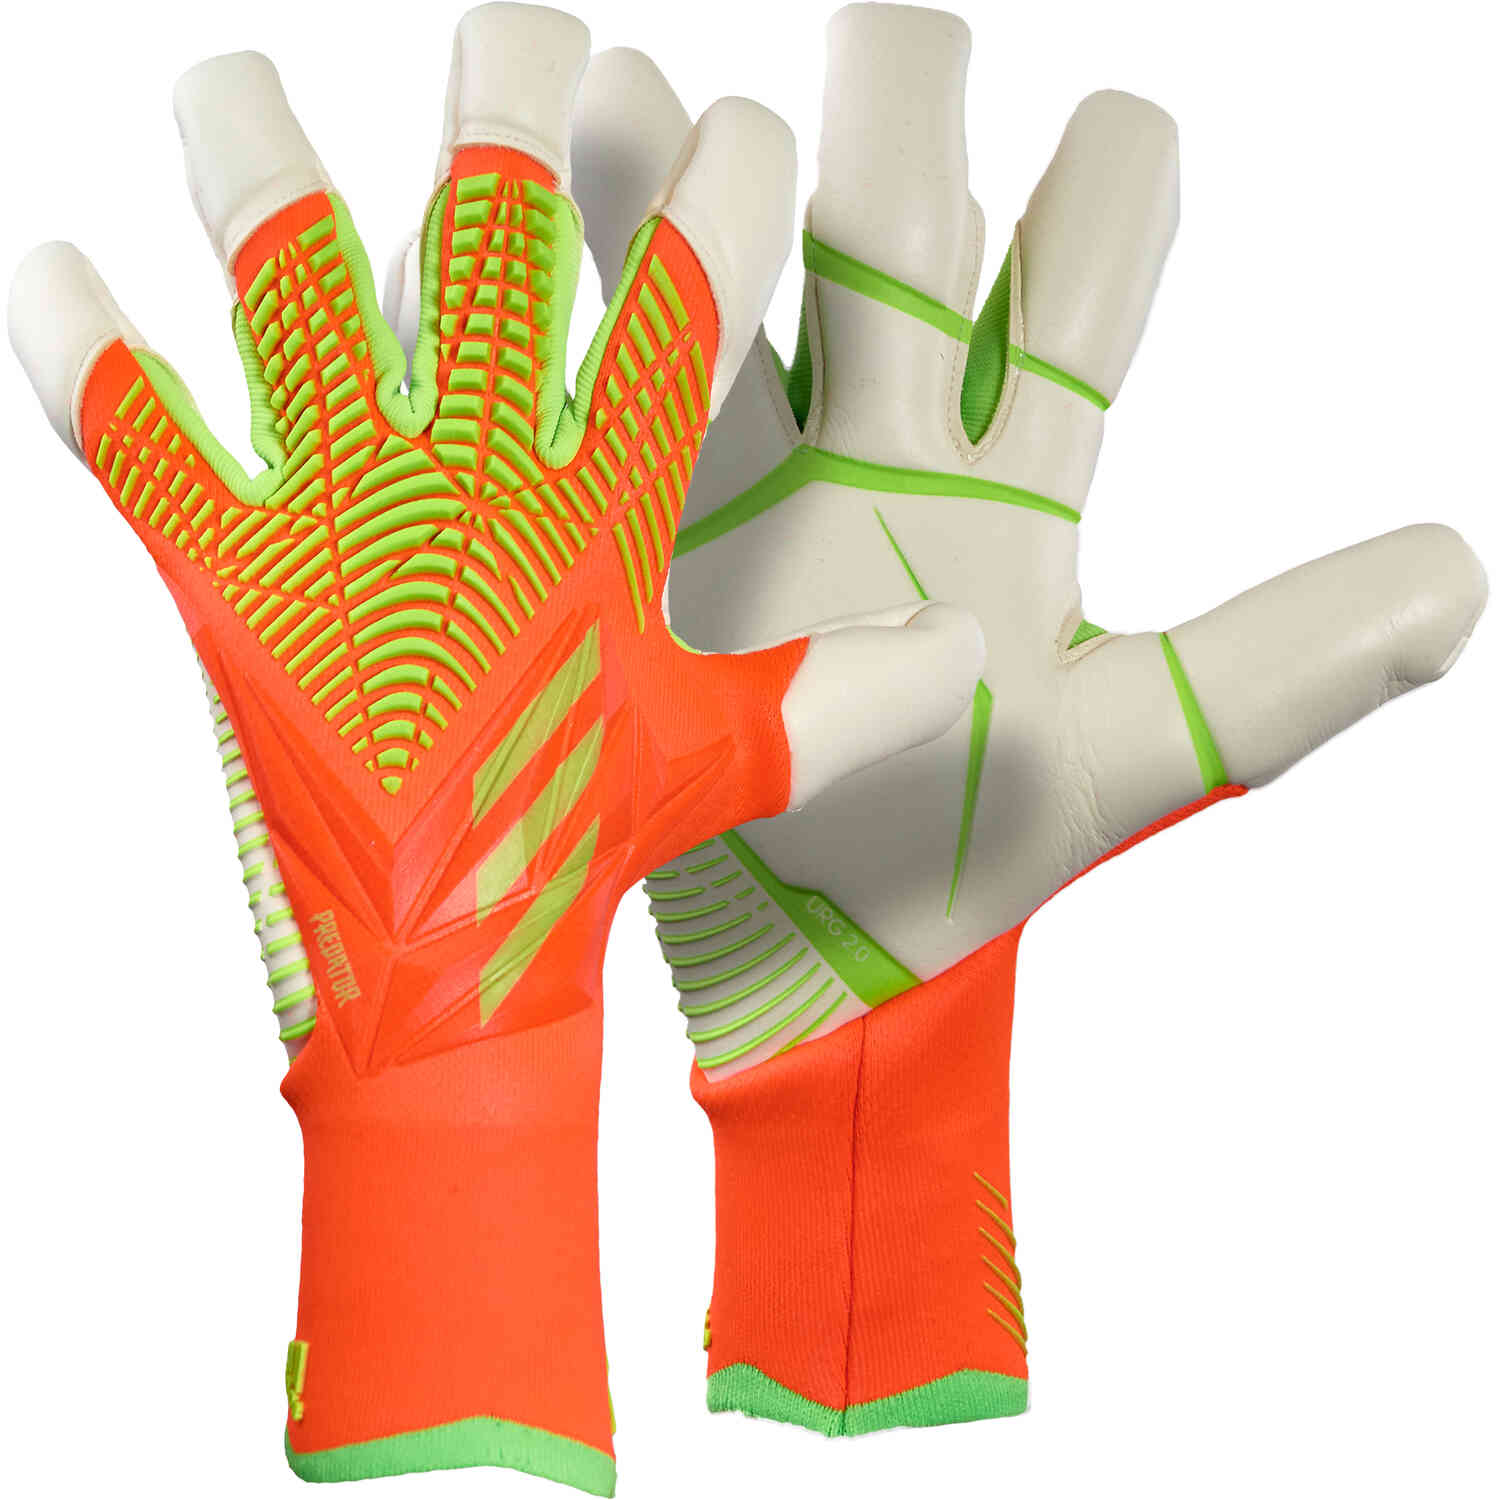 Reception Speak to Walk around adidas Predator Pro Hybrid Cut Goalkeeper Gloves - Game Data Pack -  SoccerPro